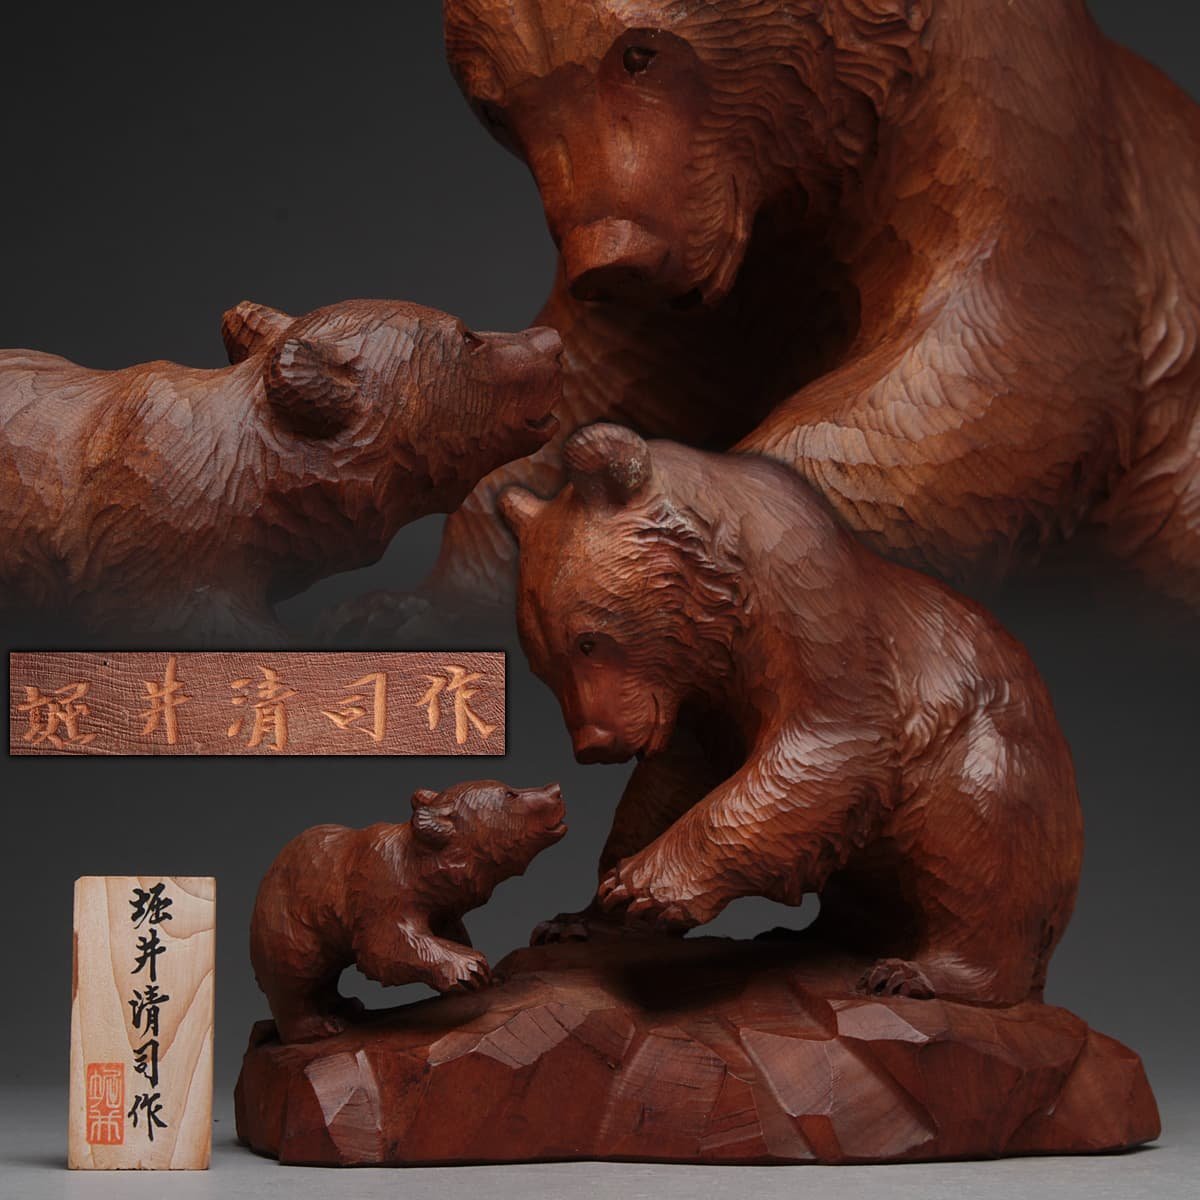 ヴィンテージ 木彫り熊 農民美術 八雲 北海道 熊面 熊の置物 壁掛け